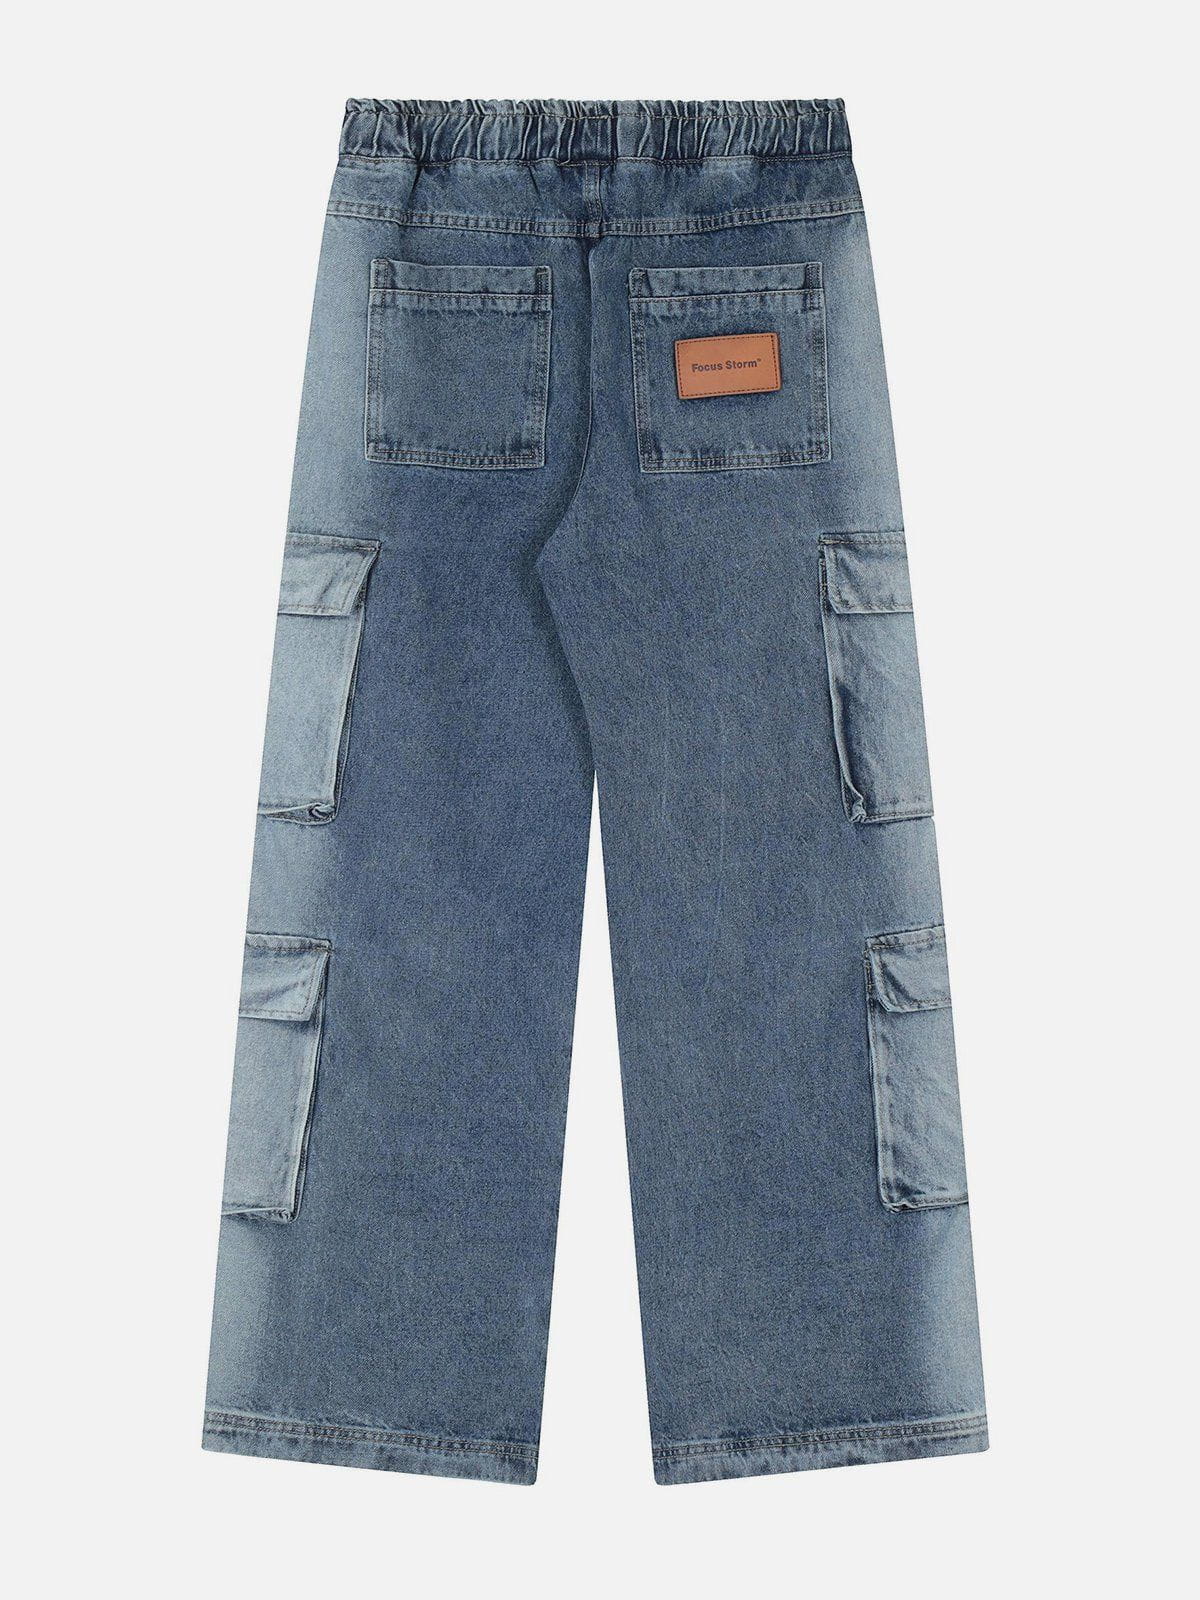 Eprezzy® - Multi-Pocket Washed Jeans Streetwear Fashion - eprezzy.com